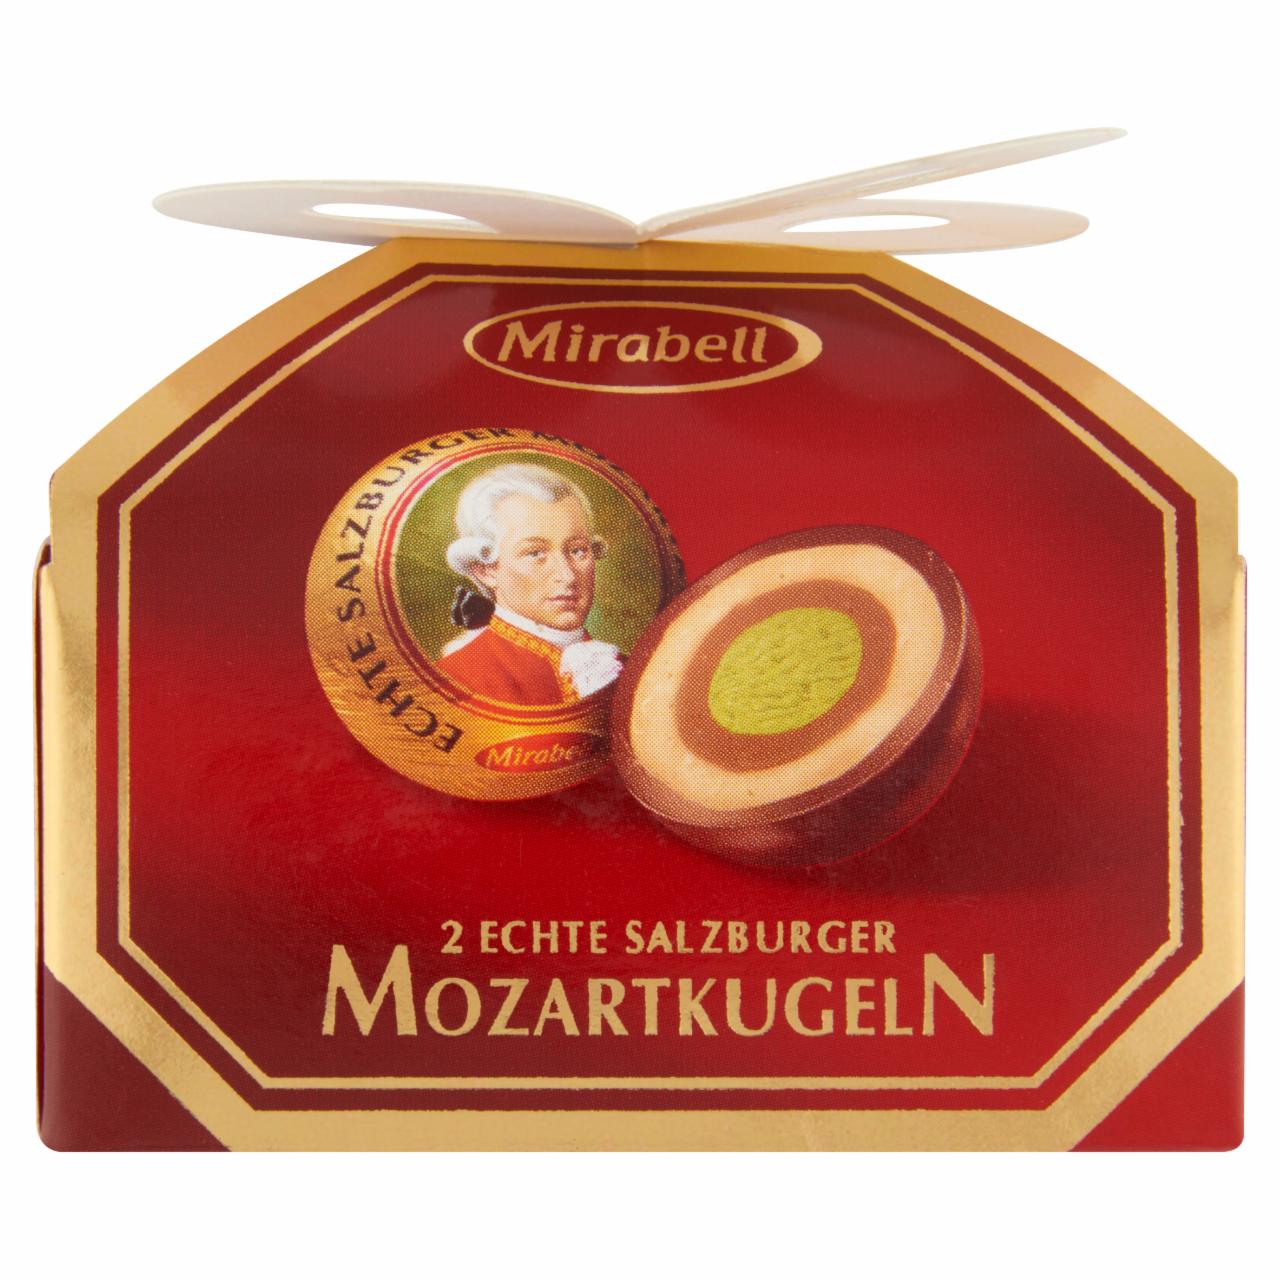 Képek - Mirabell Mozartkugeln étcsokoládé világos- és sötét mogyoróskrém és marcipán töltelékkel 2 db 34 g